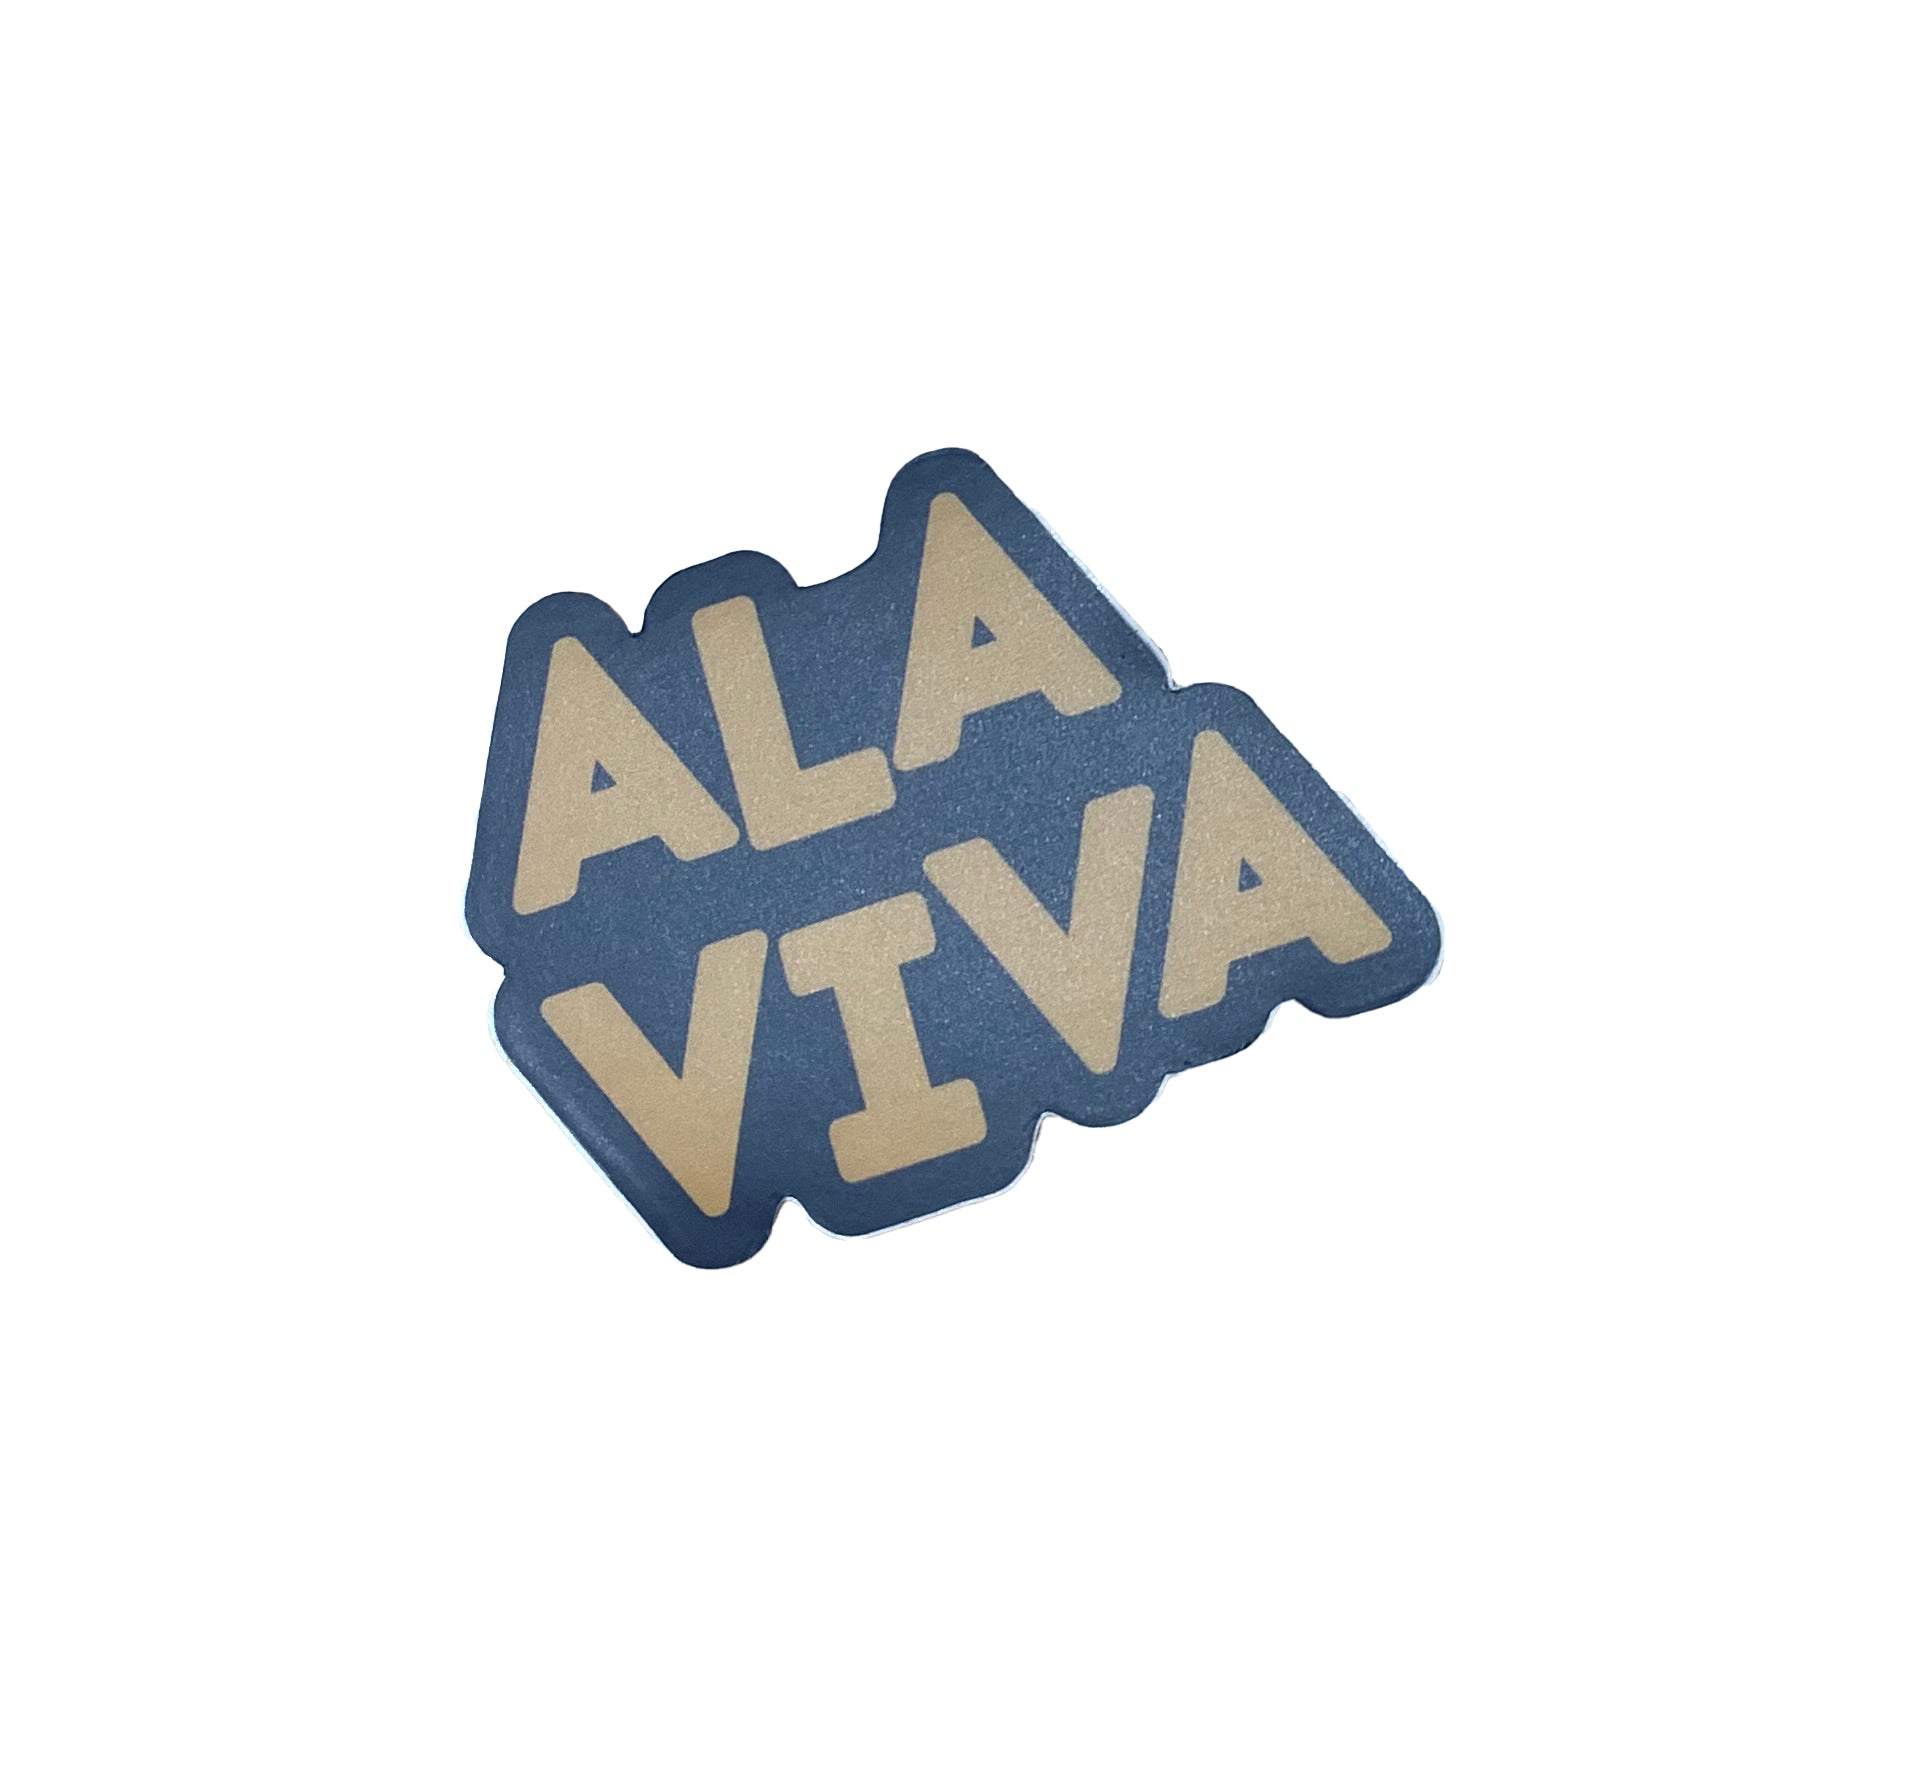 Ala Viva Sticker